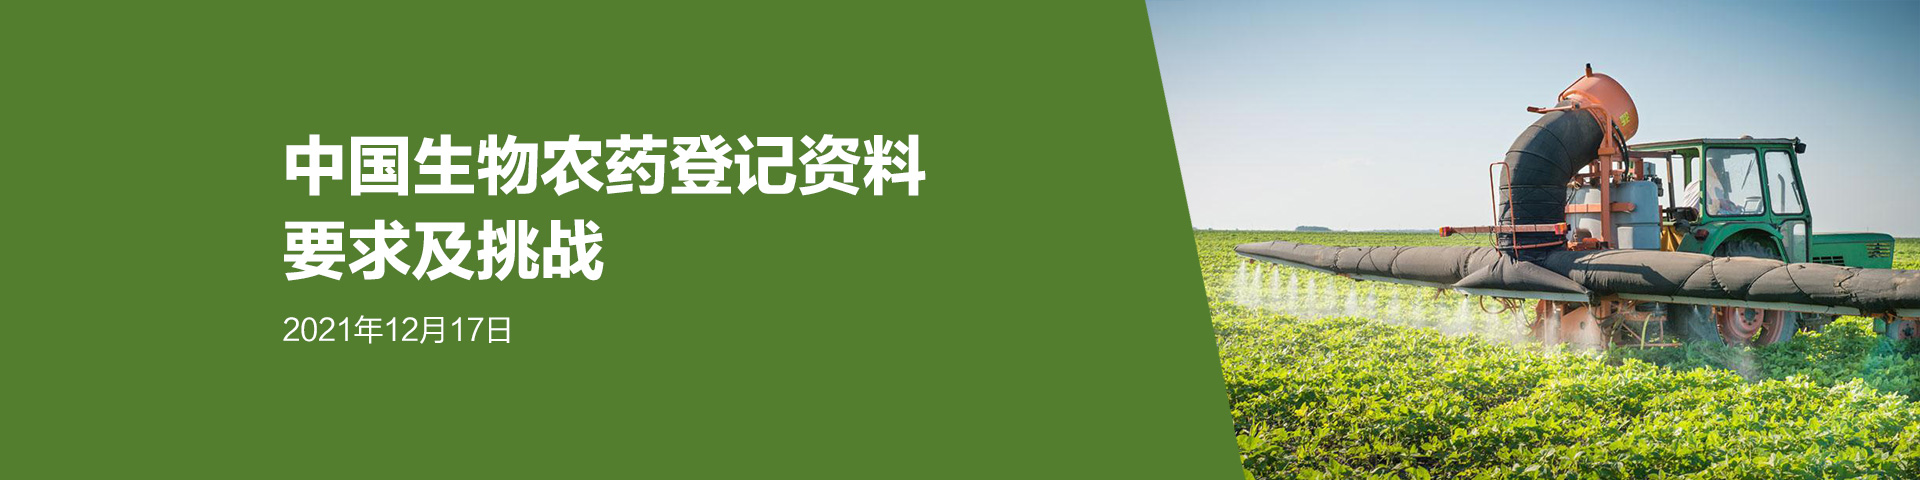 免费网络培训会议: 中国生物农药登记资料要求及挑战(12月17日)